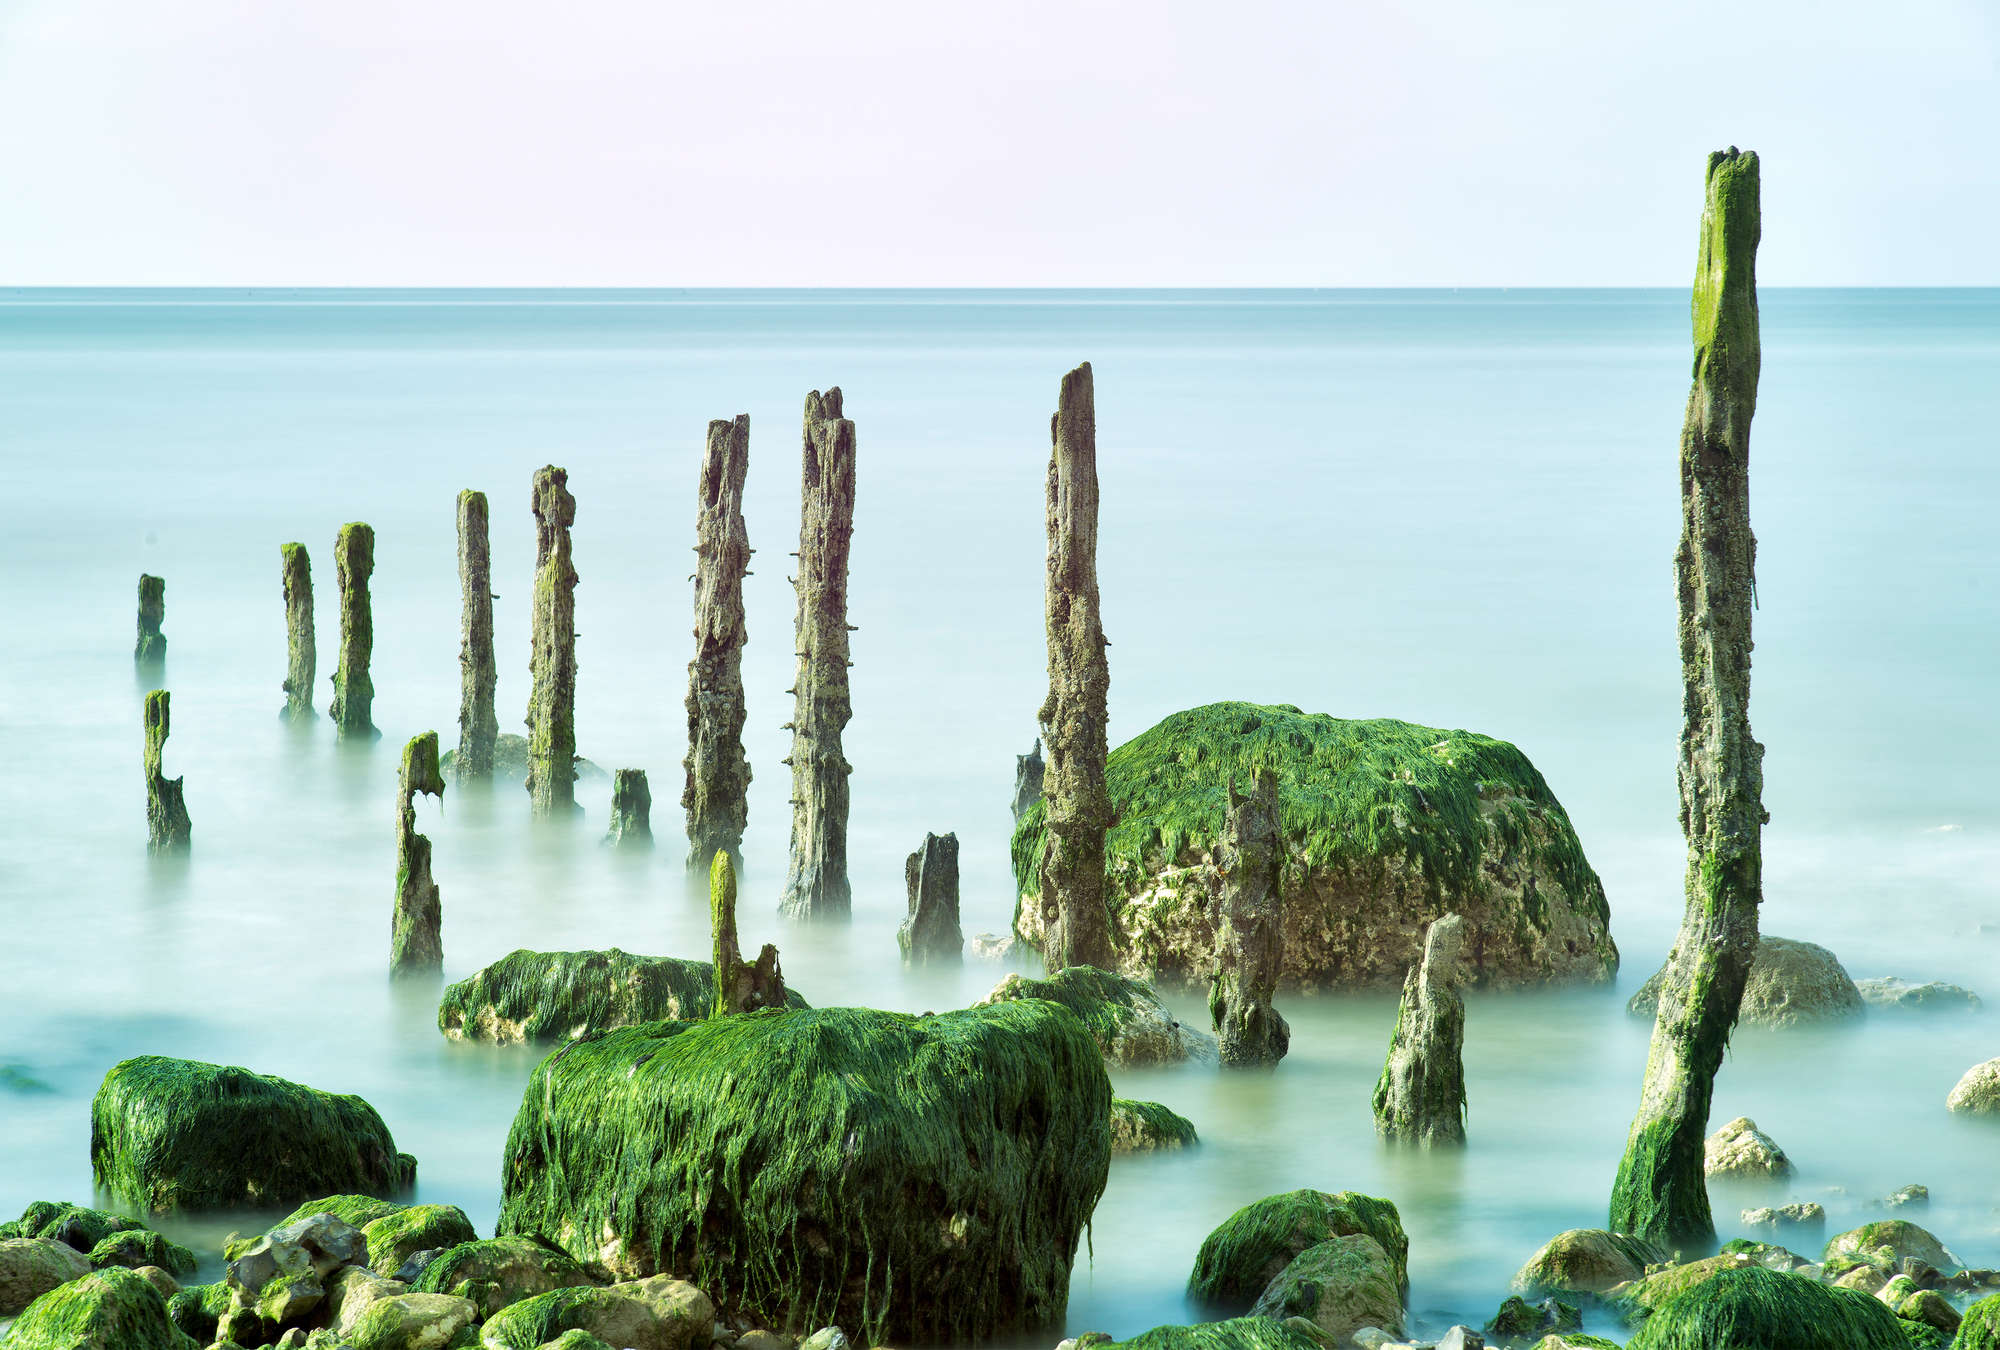             Mural marino roca verde y mar en calma
        